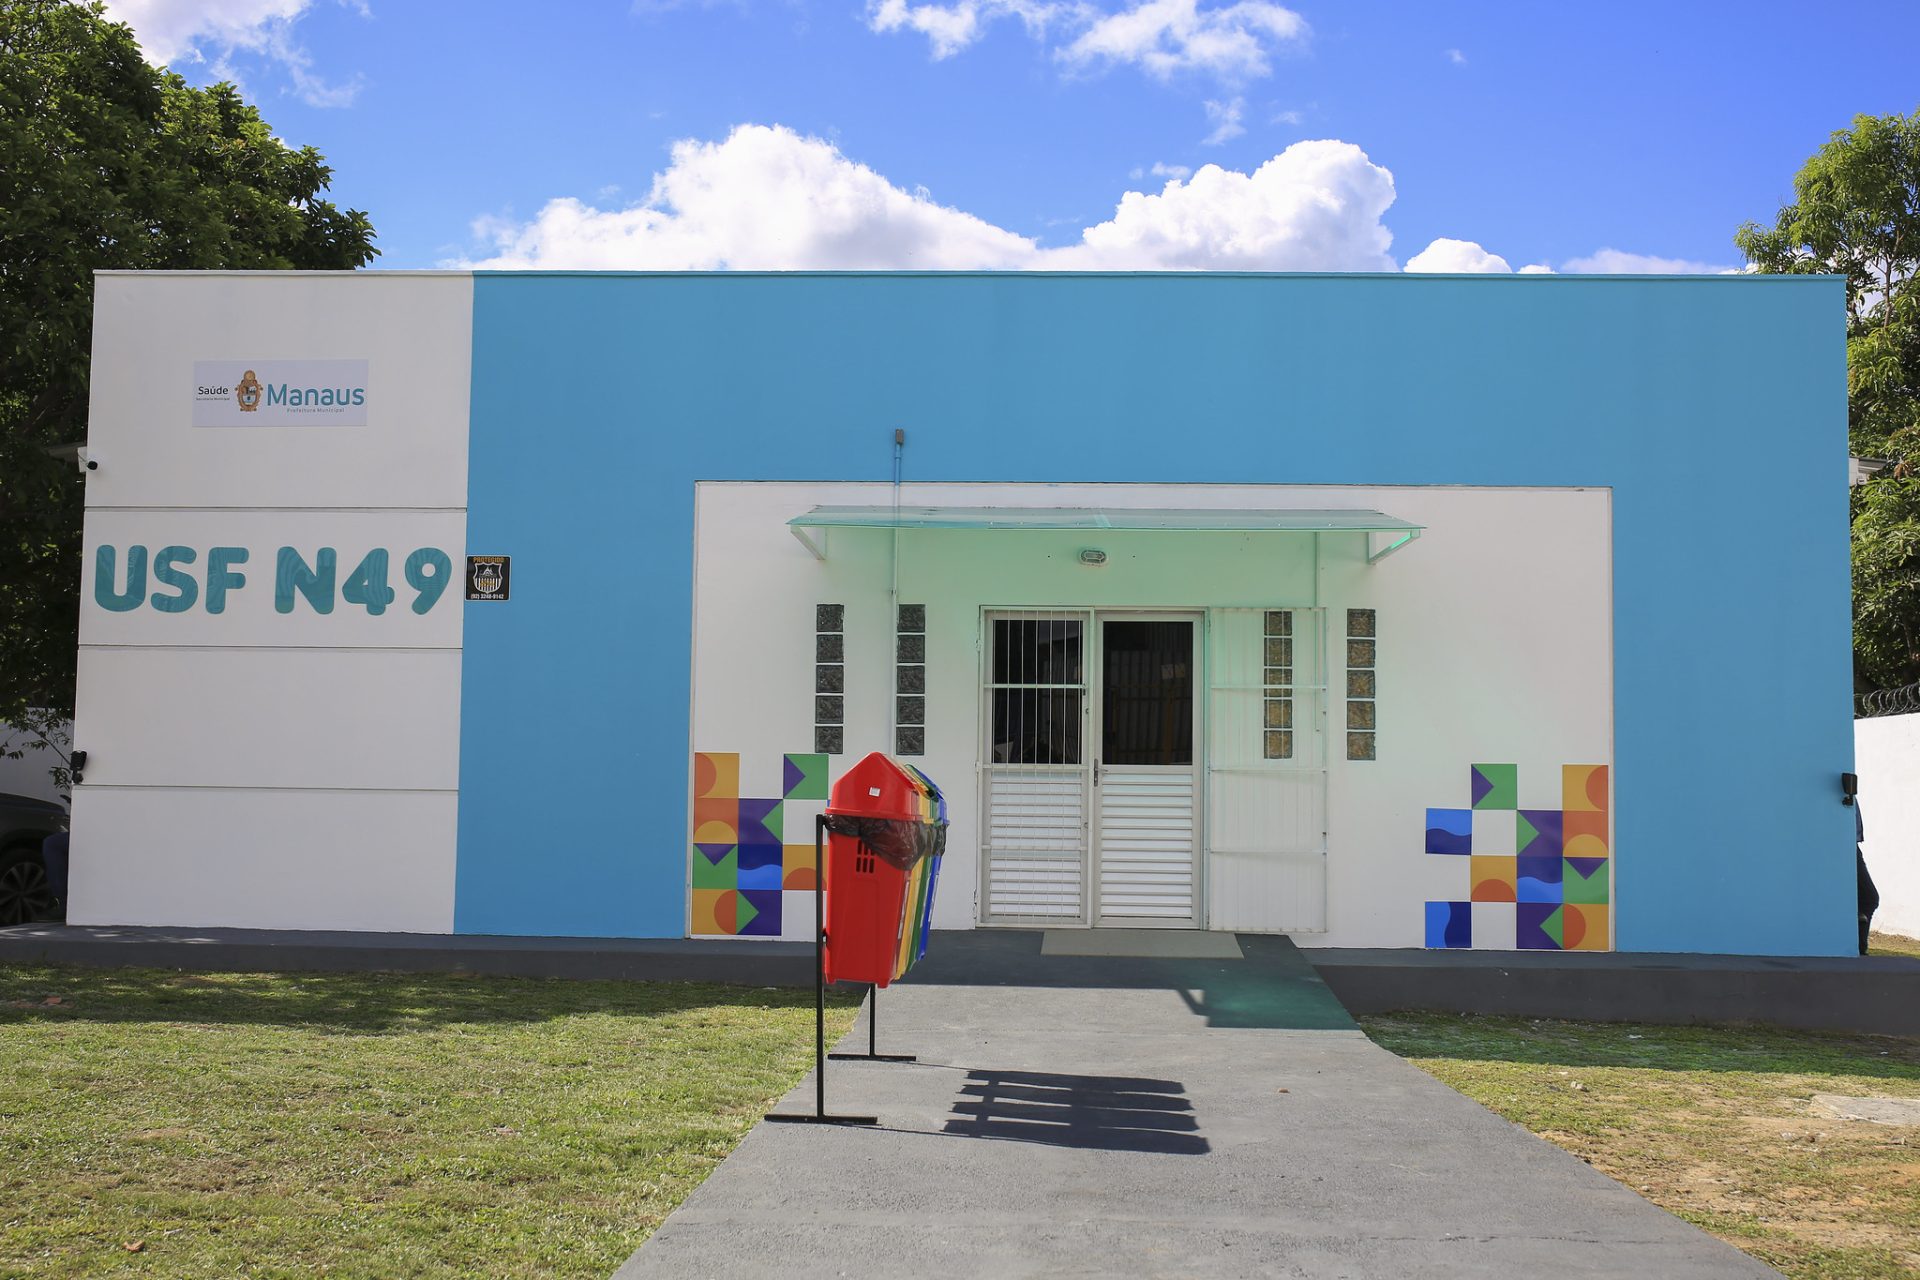 Unidade de saúde da família USF N49 na Zona Norte de Manaus - Foto: Antonio Pereira / Semcom